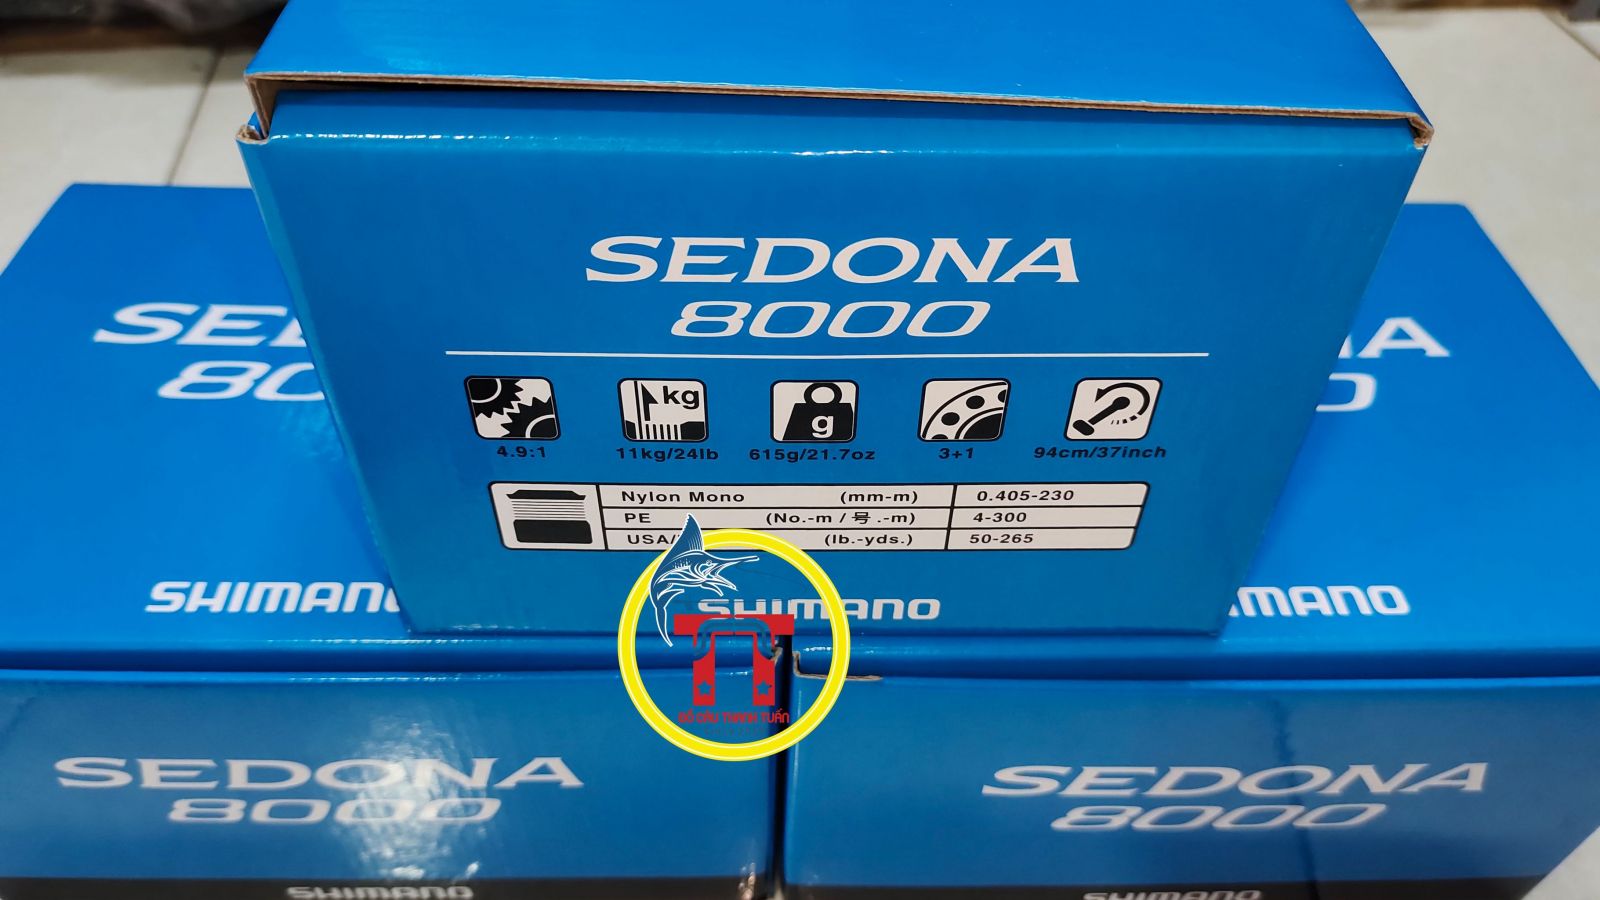 Máy Câu Shimano Sedona C2000S - 8000 Chính Hãng